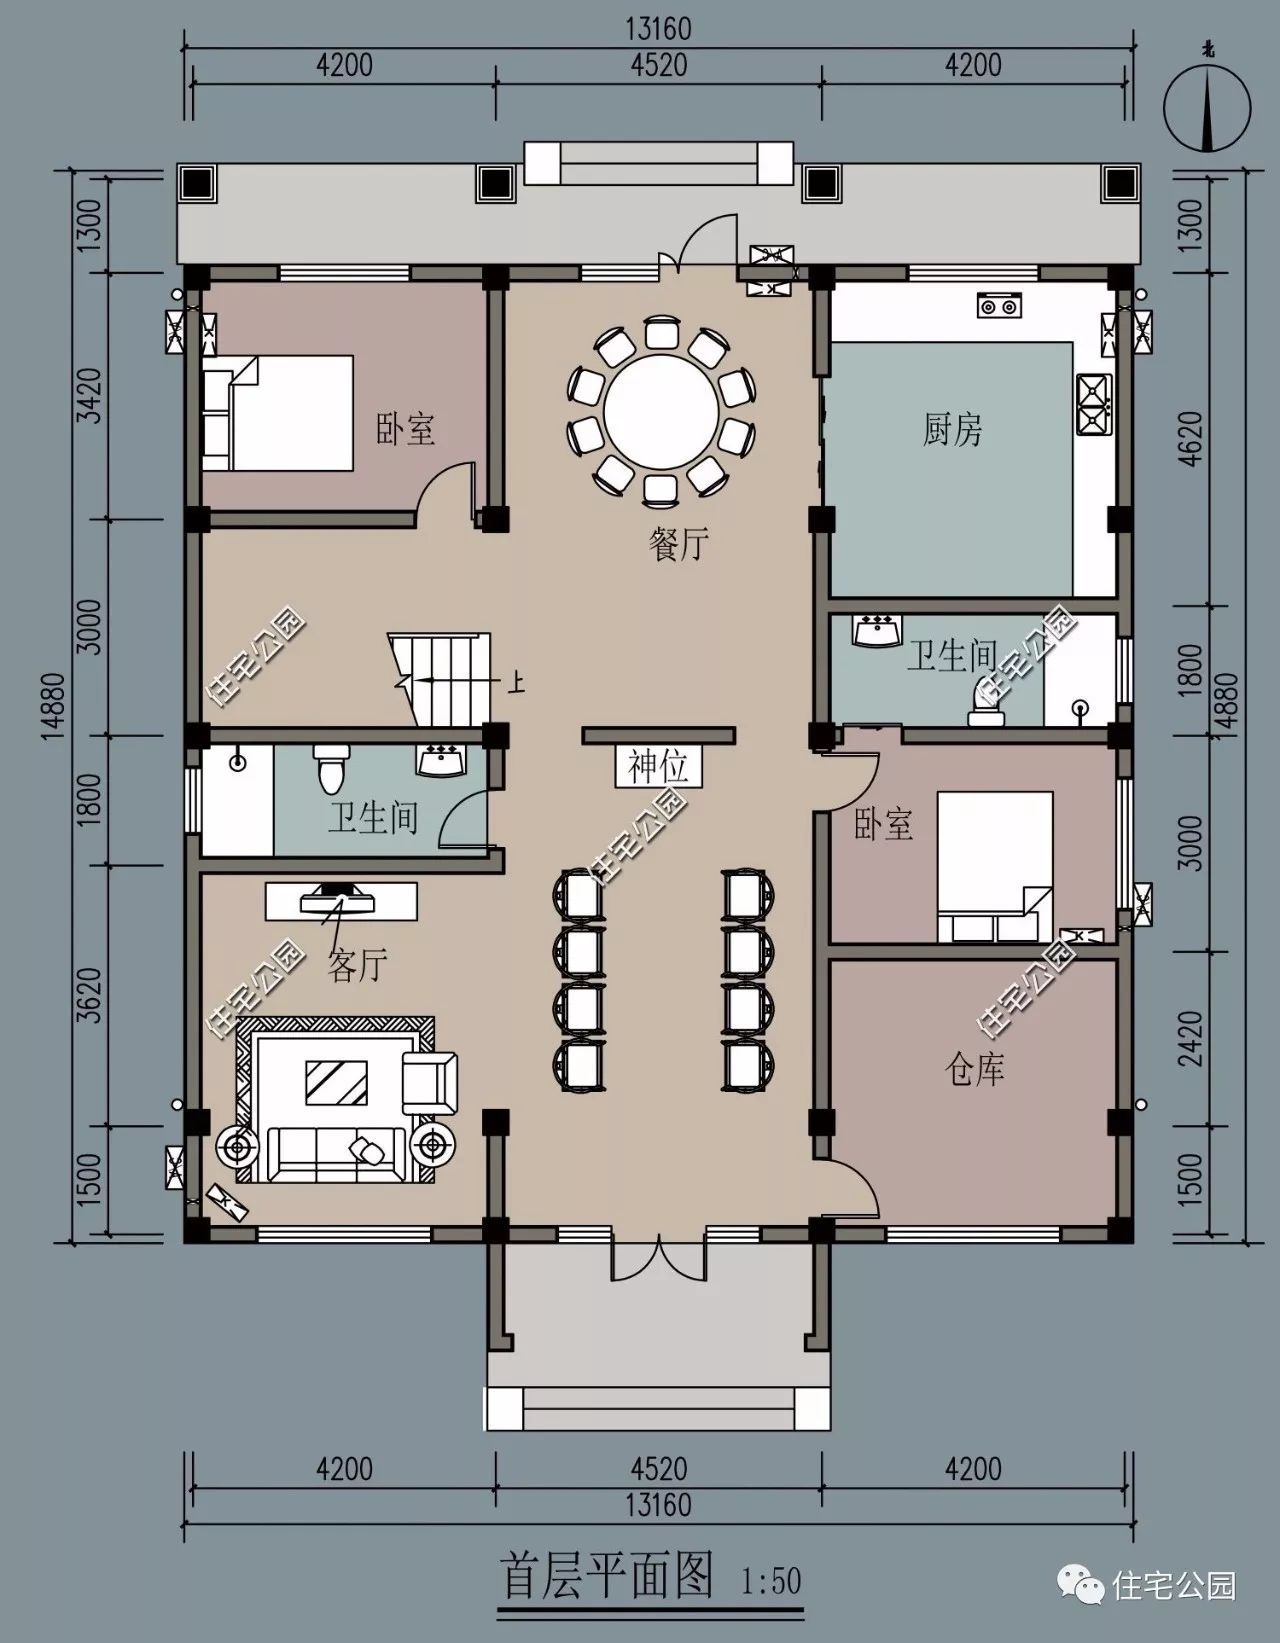 带仓库和备用房,16米二层乡村别墅(全图+预算+